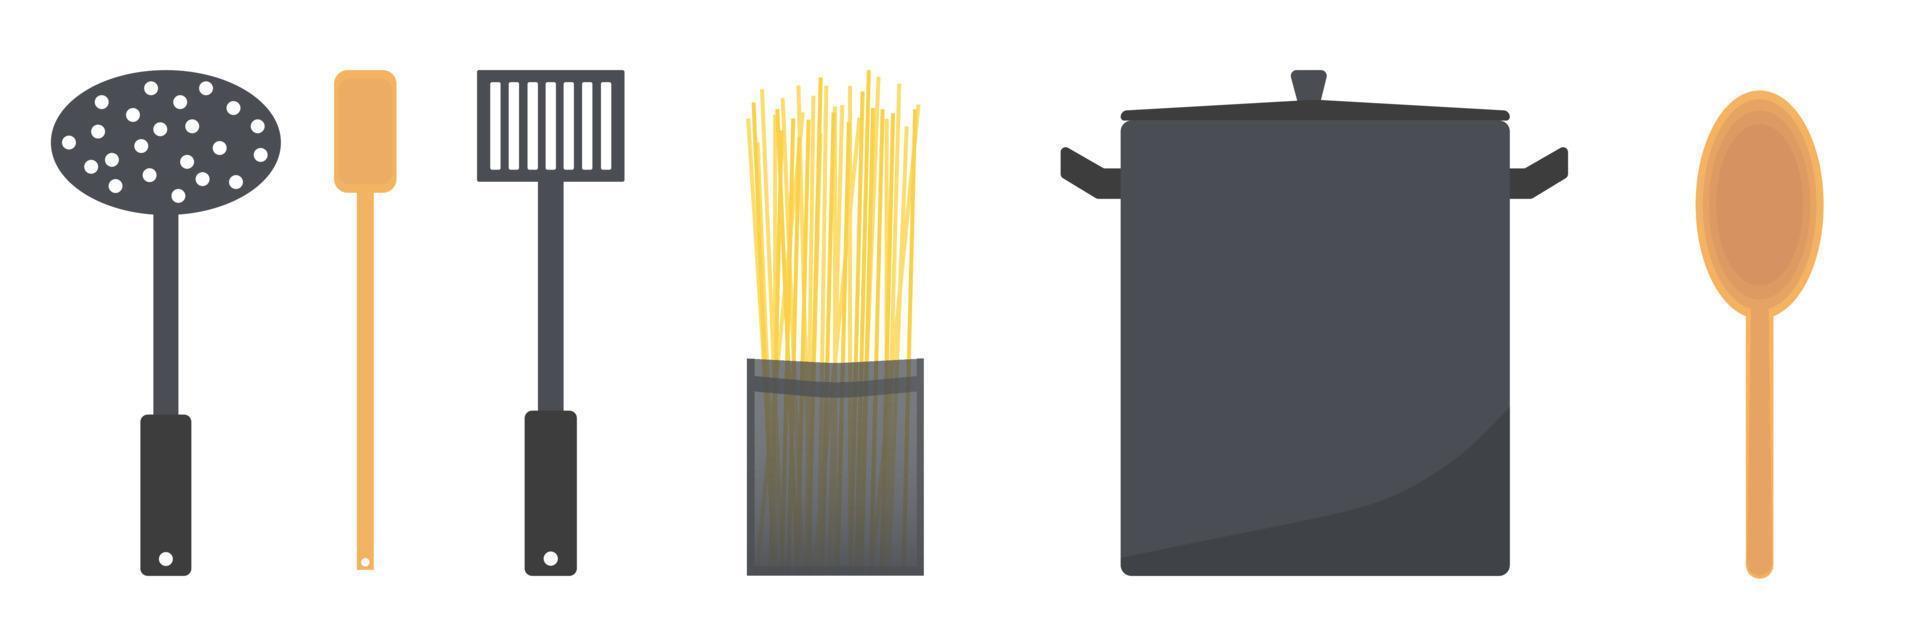 set utensilien und werkzeuge zum kochen von spaghetti-vektor-flachbildillustration vektor